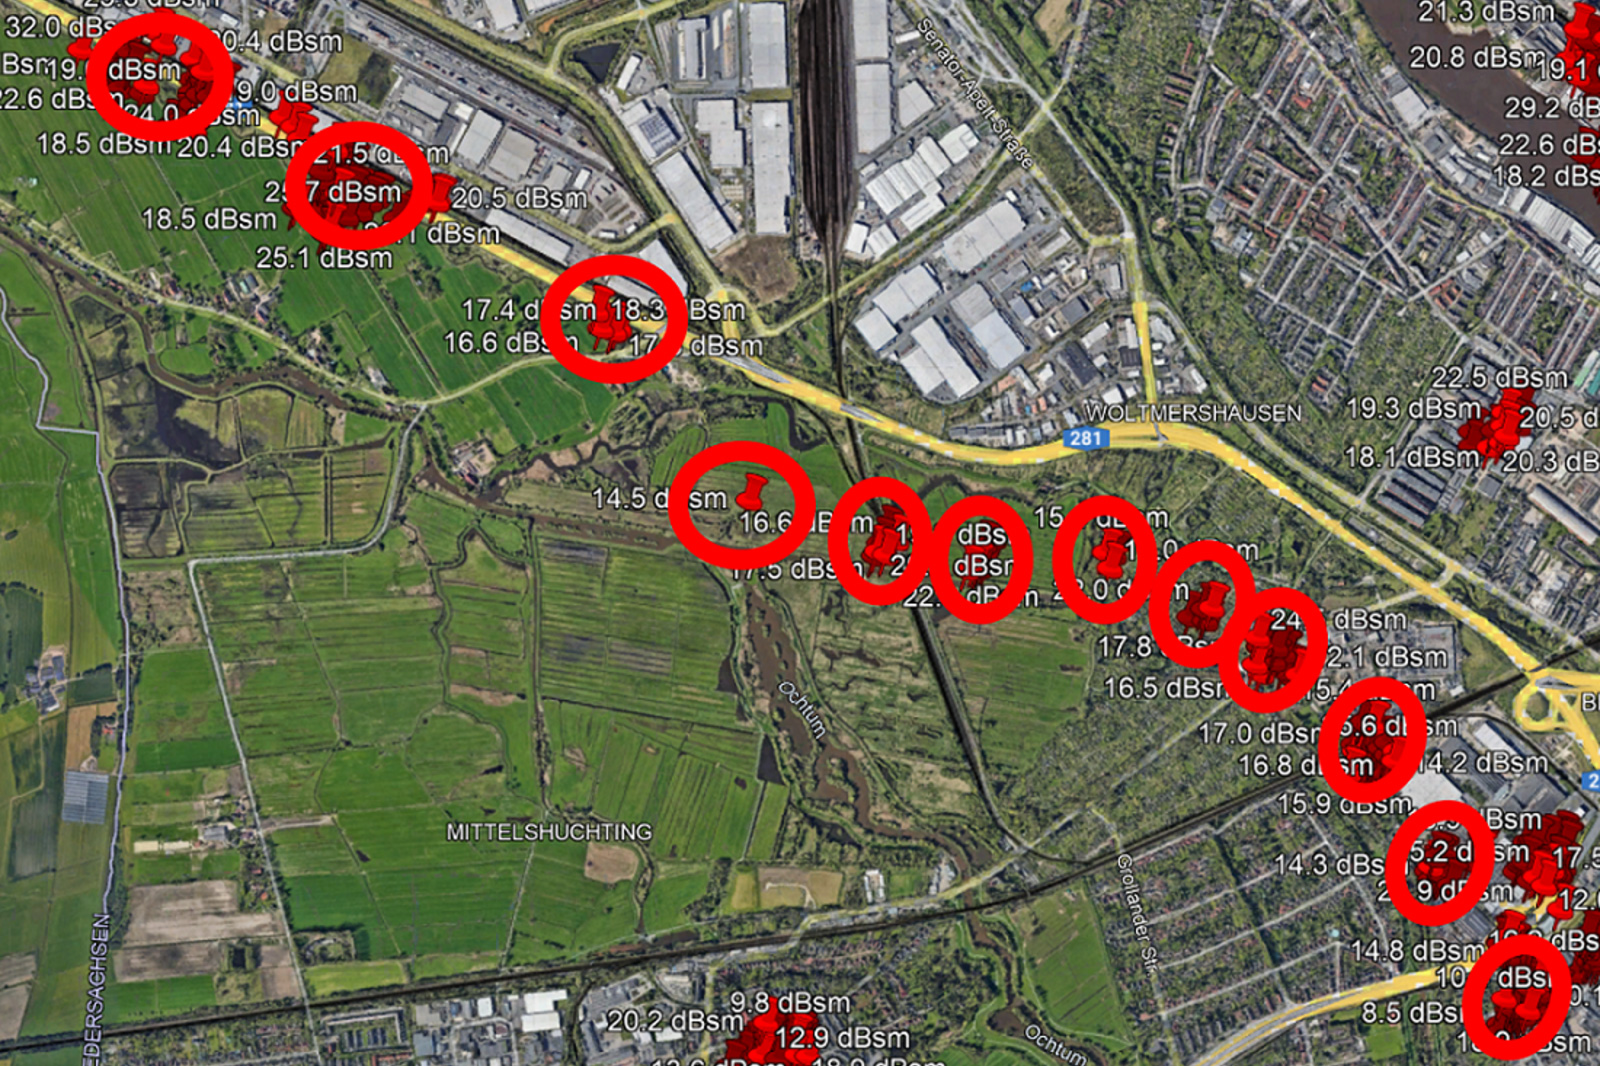 Foto: Bearbeitung Jade HS; Kartenmaterial: Google Earth Bildunterschrift: Aus den Messdaten, die mit der Jade One erhoben werden, werden sogar die reflektierten Signale von Masten einer Hochspannungsleitung (rote Kreise) in der Umgebung des Flughafens Bremen erkennbar.